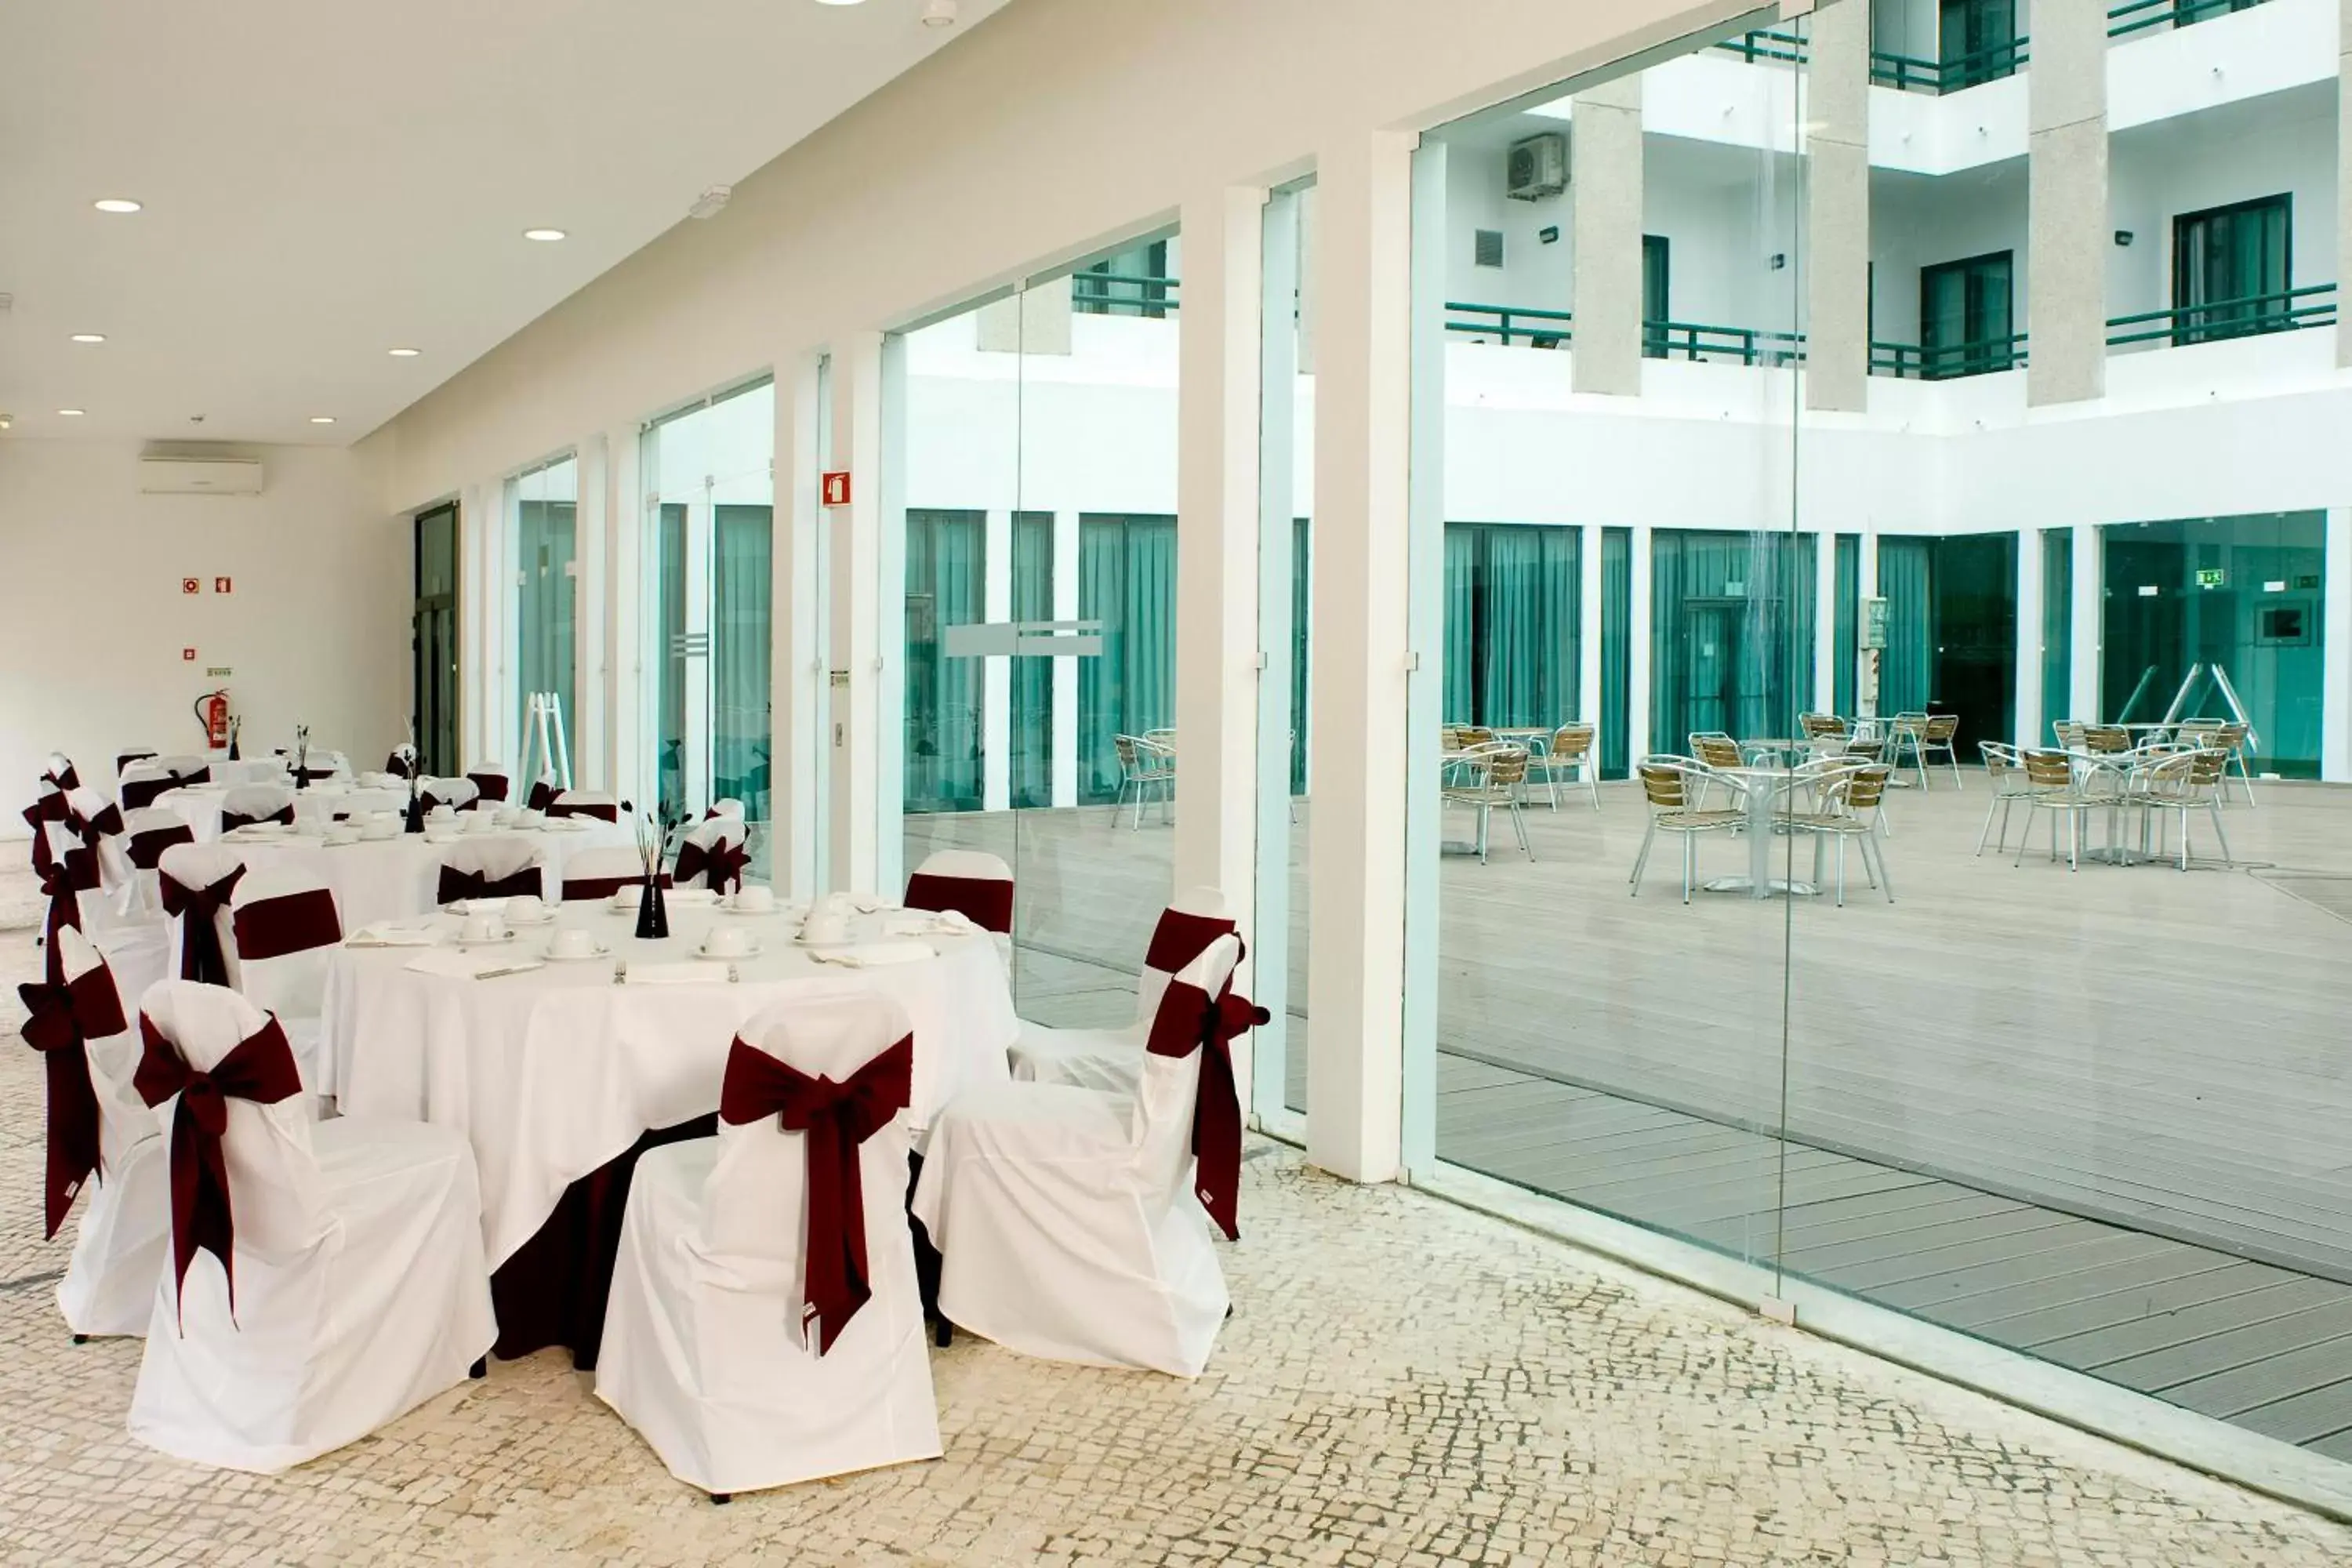 Banquet/Function facilities, Banquet Facilities in Leziria Parque Hotel